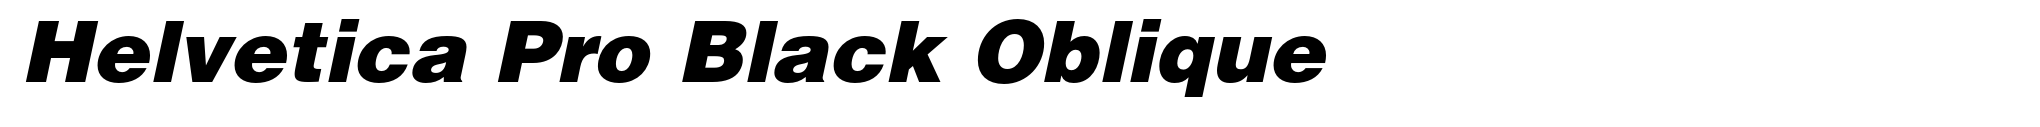 Helvetica Pro Black Oblique image